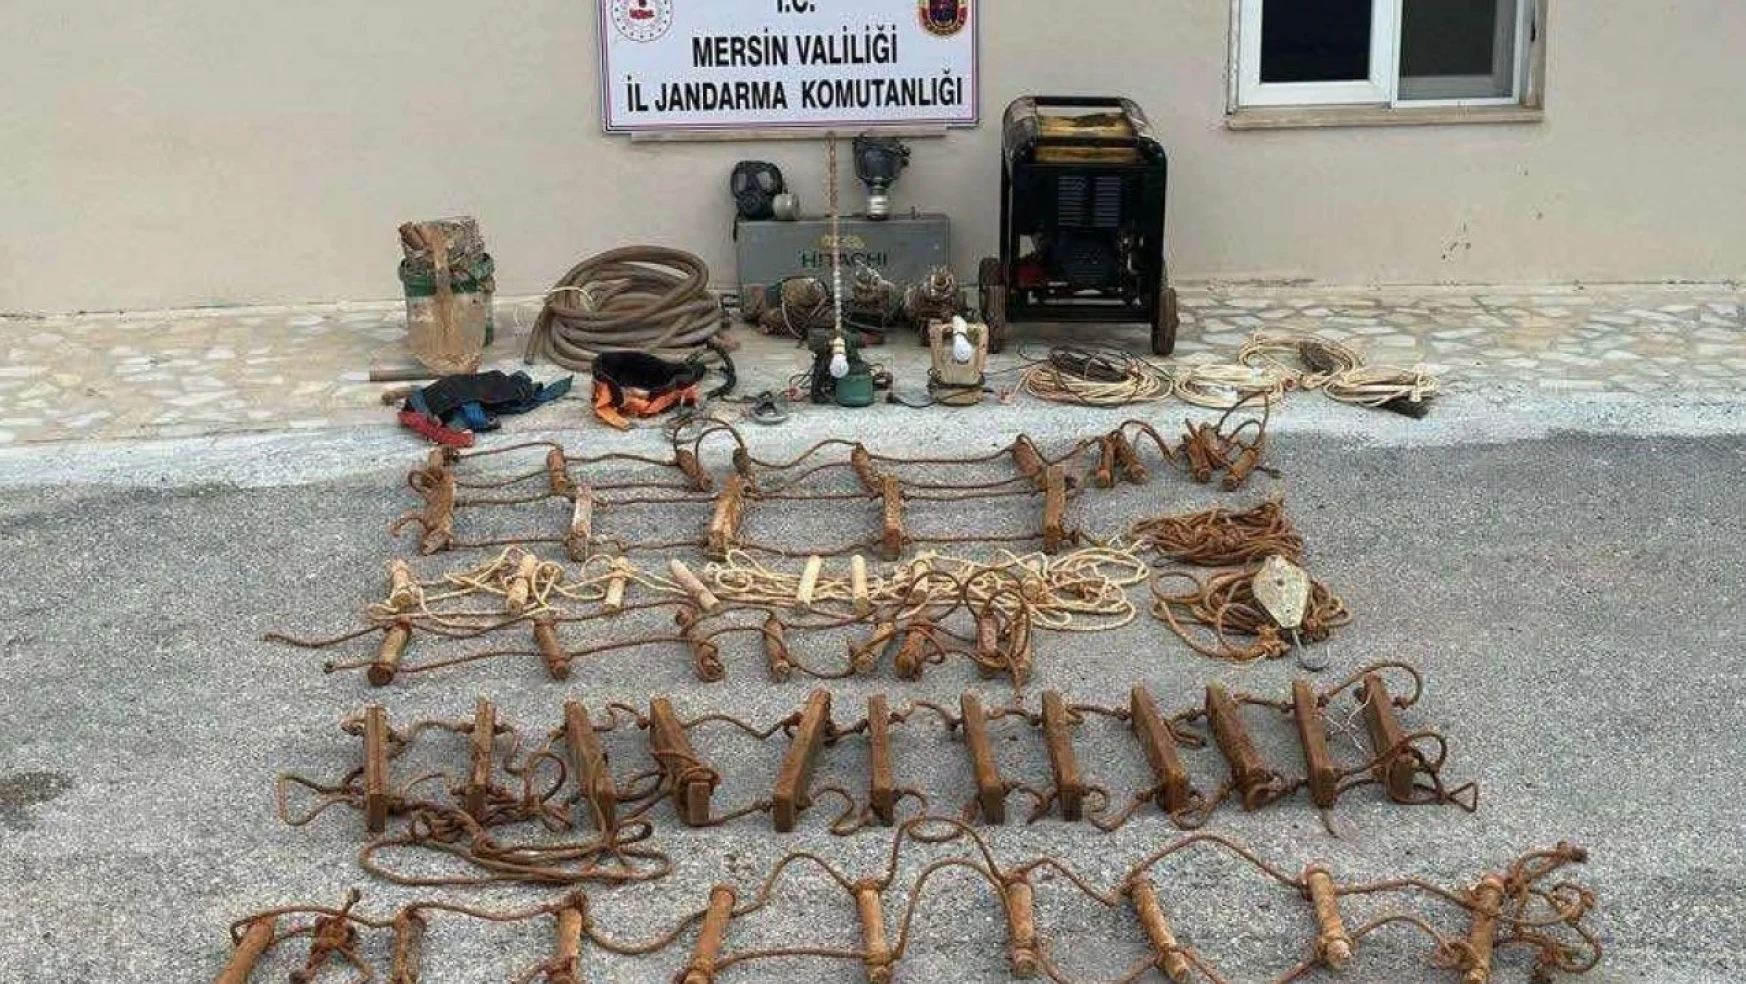 Mersin'de kaçak kazı yapan 5 şüpheli suçüstü yakalandı